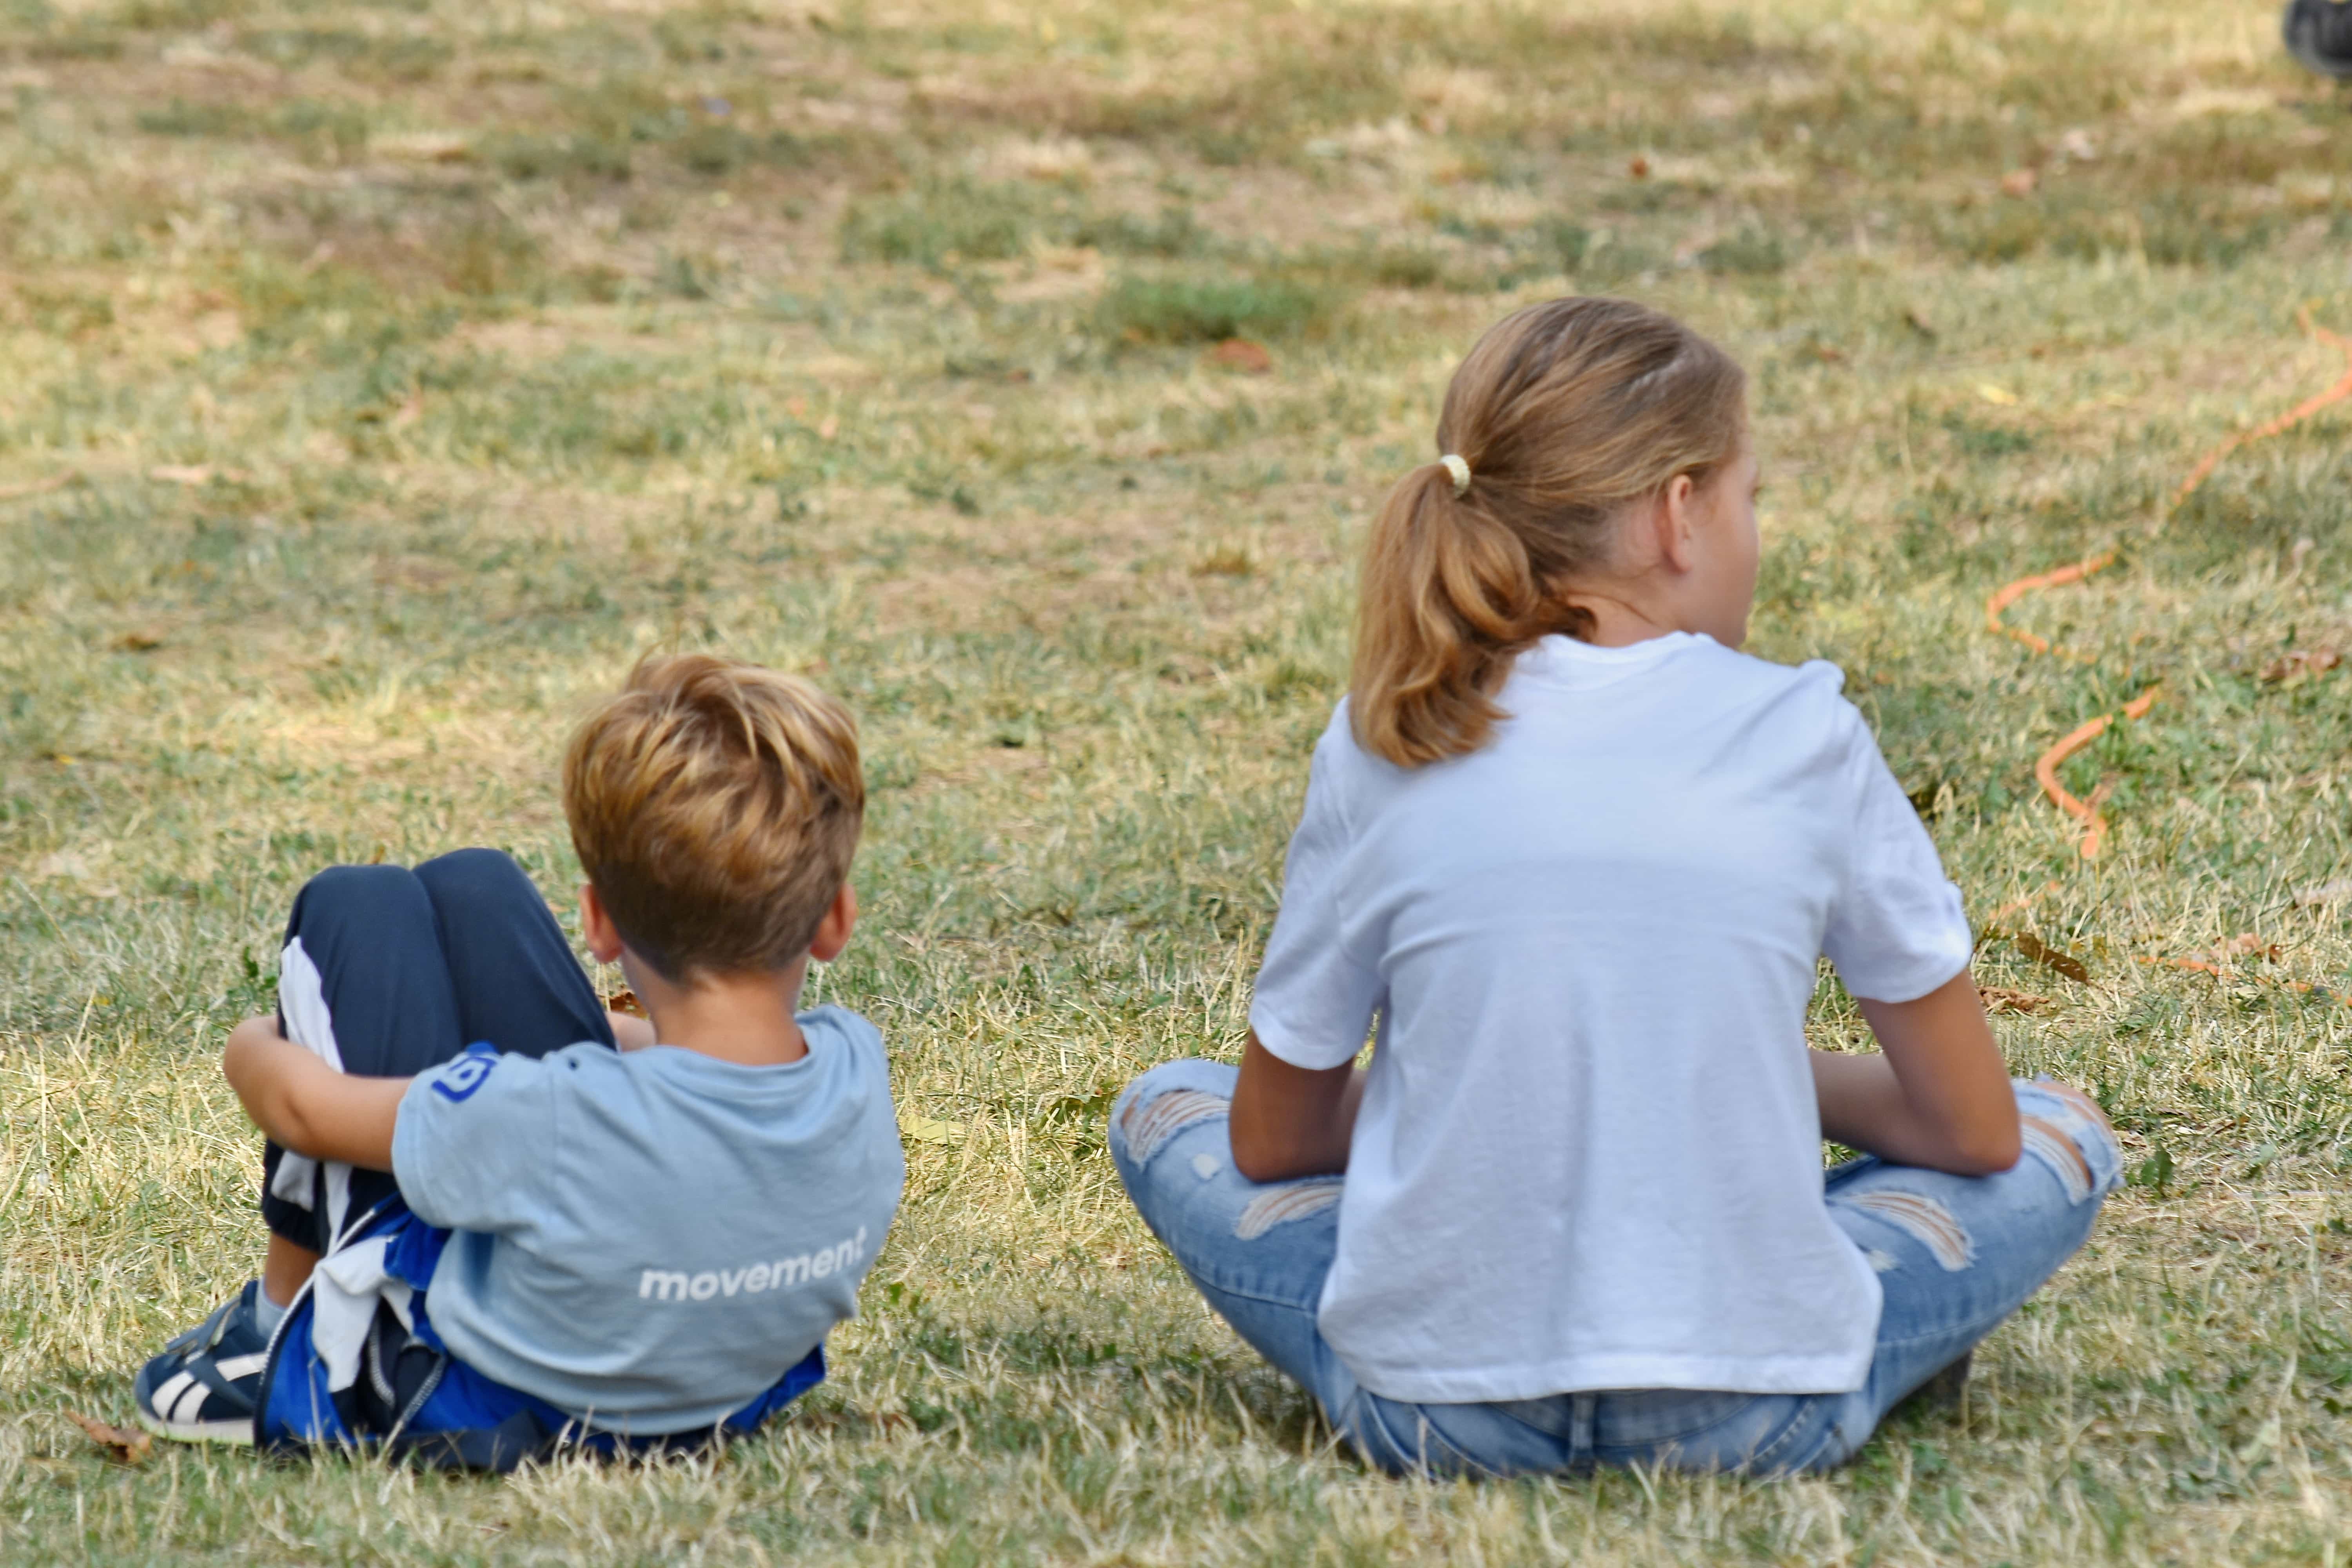 Menino e menina de costas, sentados na grama, olhando para lados opostos. Imagem ilustrativa texto violência não é resposta.